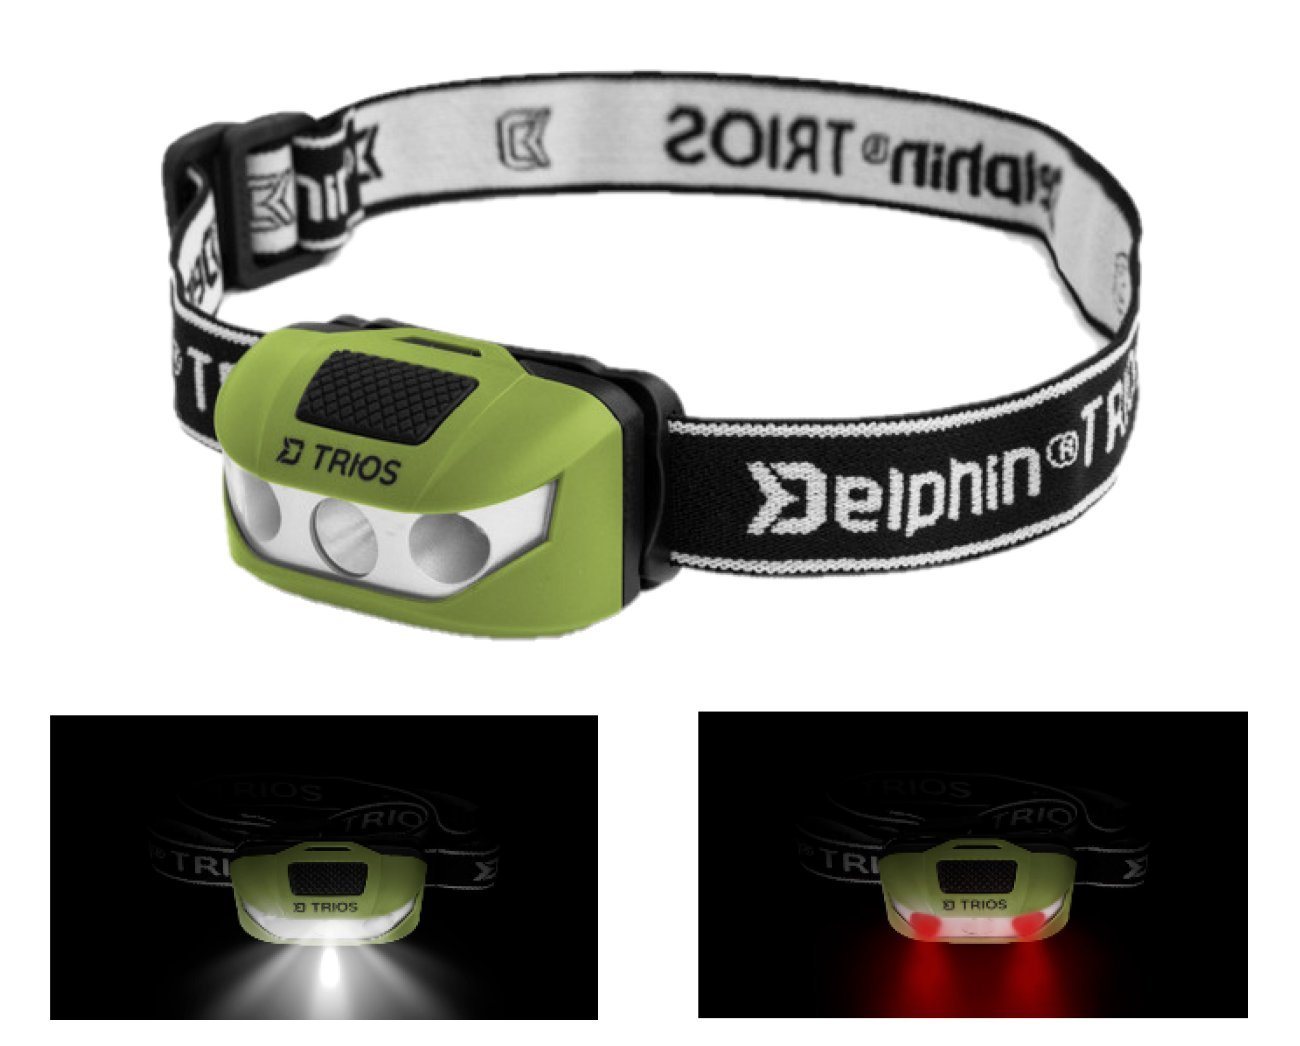 Delphin.sk LED Stirnlampe TRIOS LED Stirnlampe Kopflampe 1 weiße 2 rote LEDs Headlamp Headlight, Sie hat eine Neigung, so dass Sie das Licht beim Lesen nutzen können von Delphin.sk